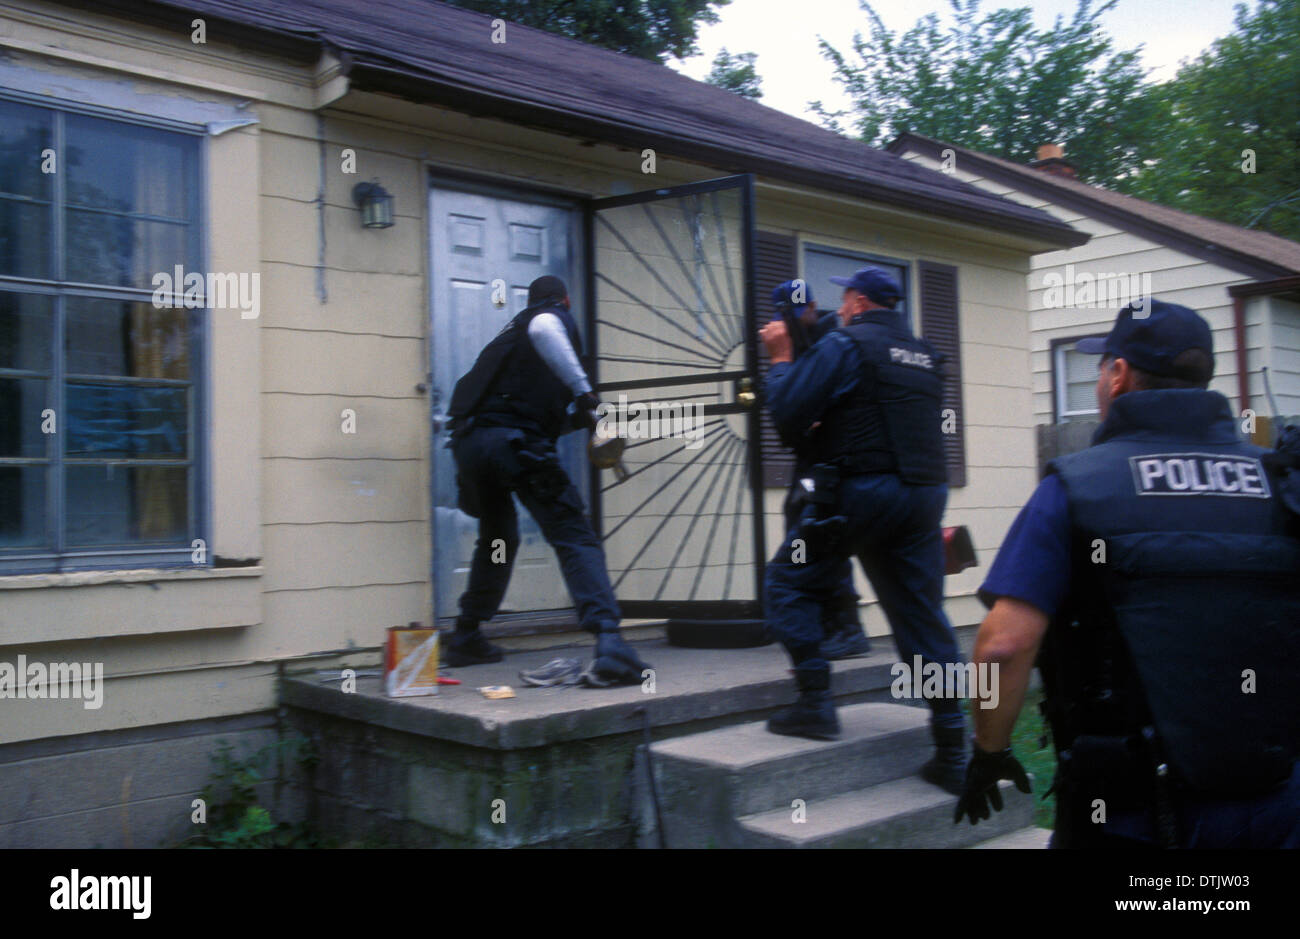 los-oficiales-de-narcoticos-de-la-policia-de-detroit-narcs-asaltar-una-casa-detroit-michigan-ee-uu-dtjw03.jpg